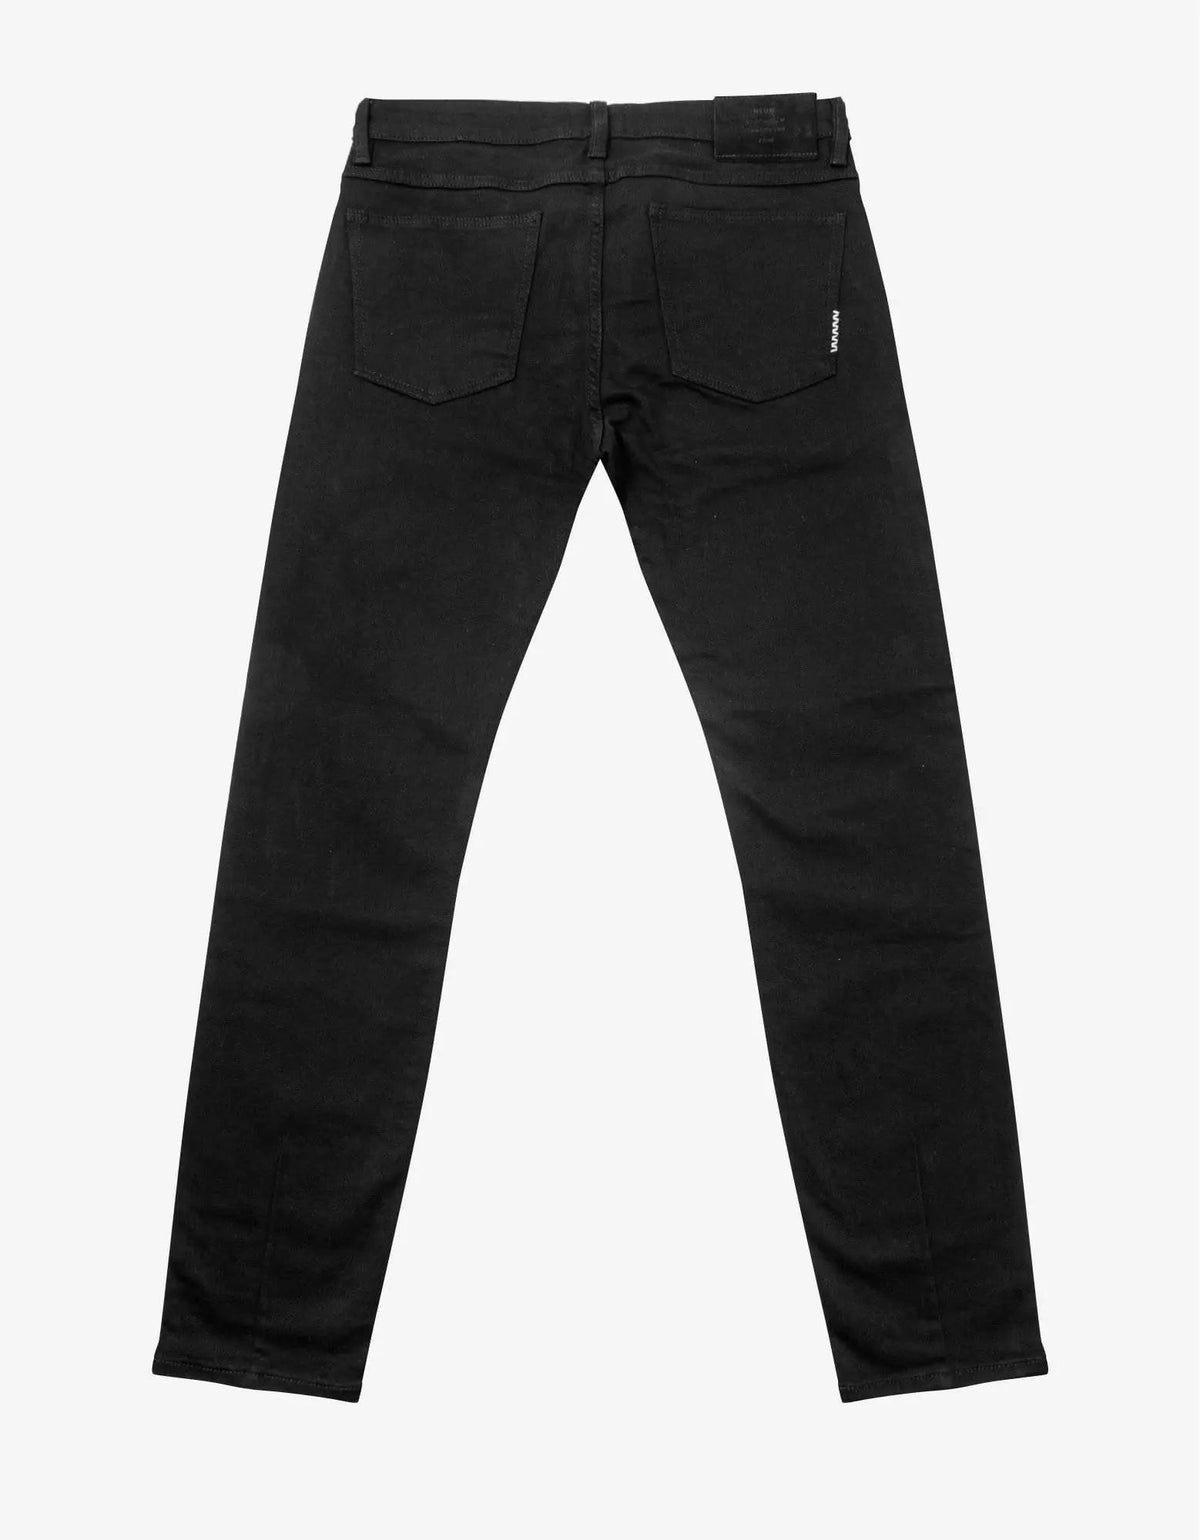 Neuw Neuw Black Iggy Skinny Perfecto Jeans